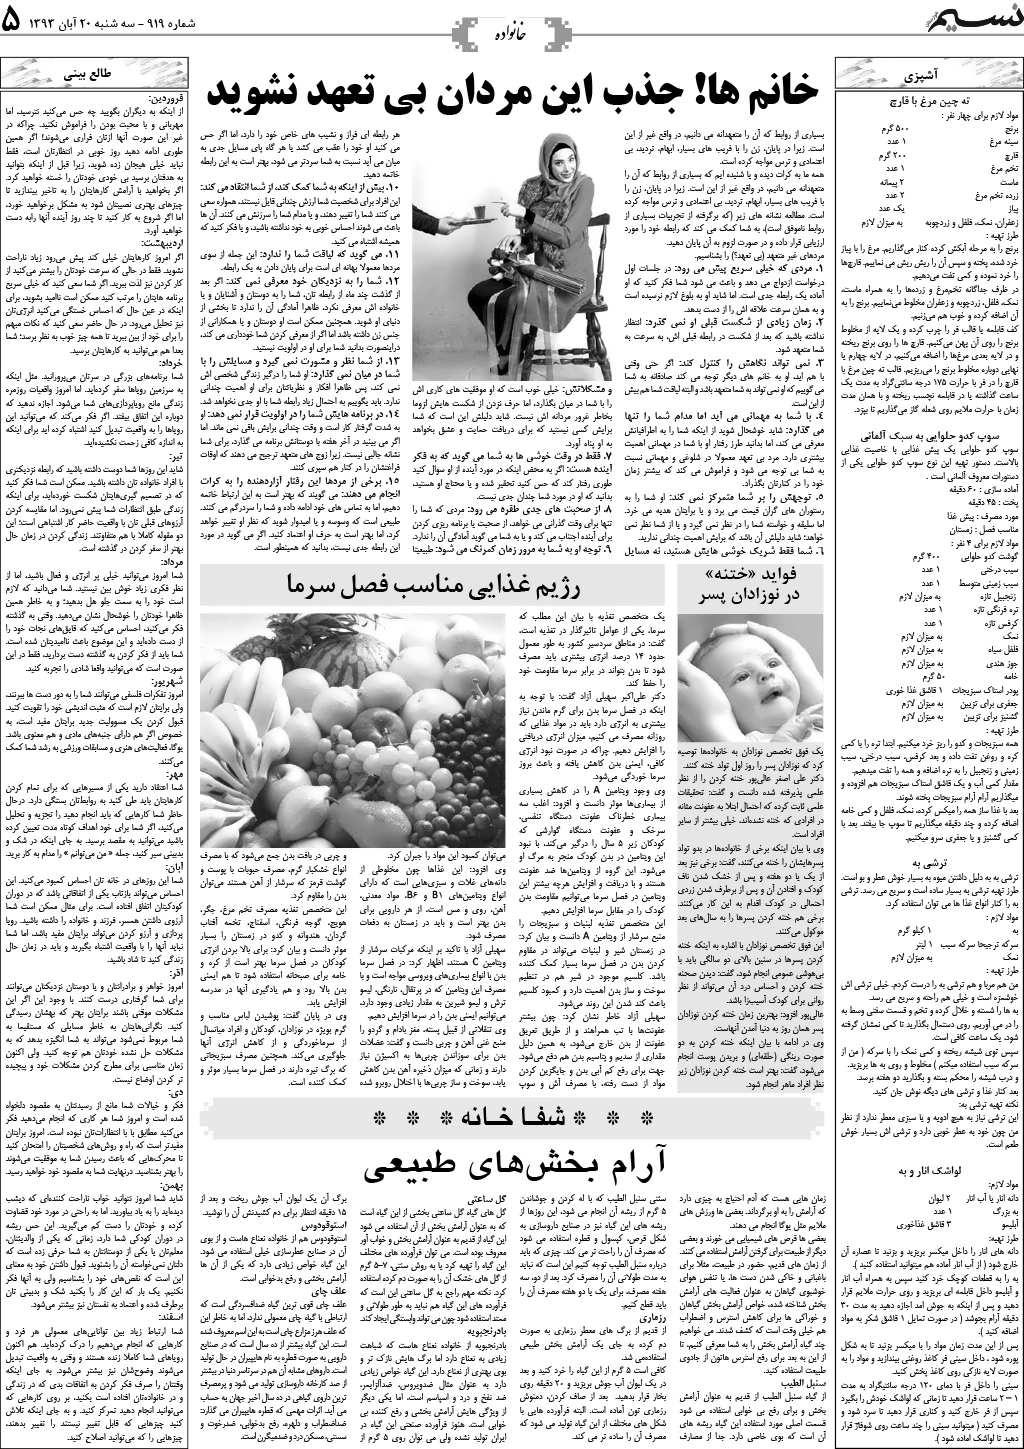 صفحه خانواده روزنامه نسیم شماره 919